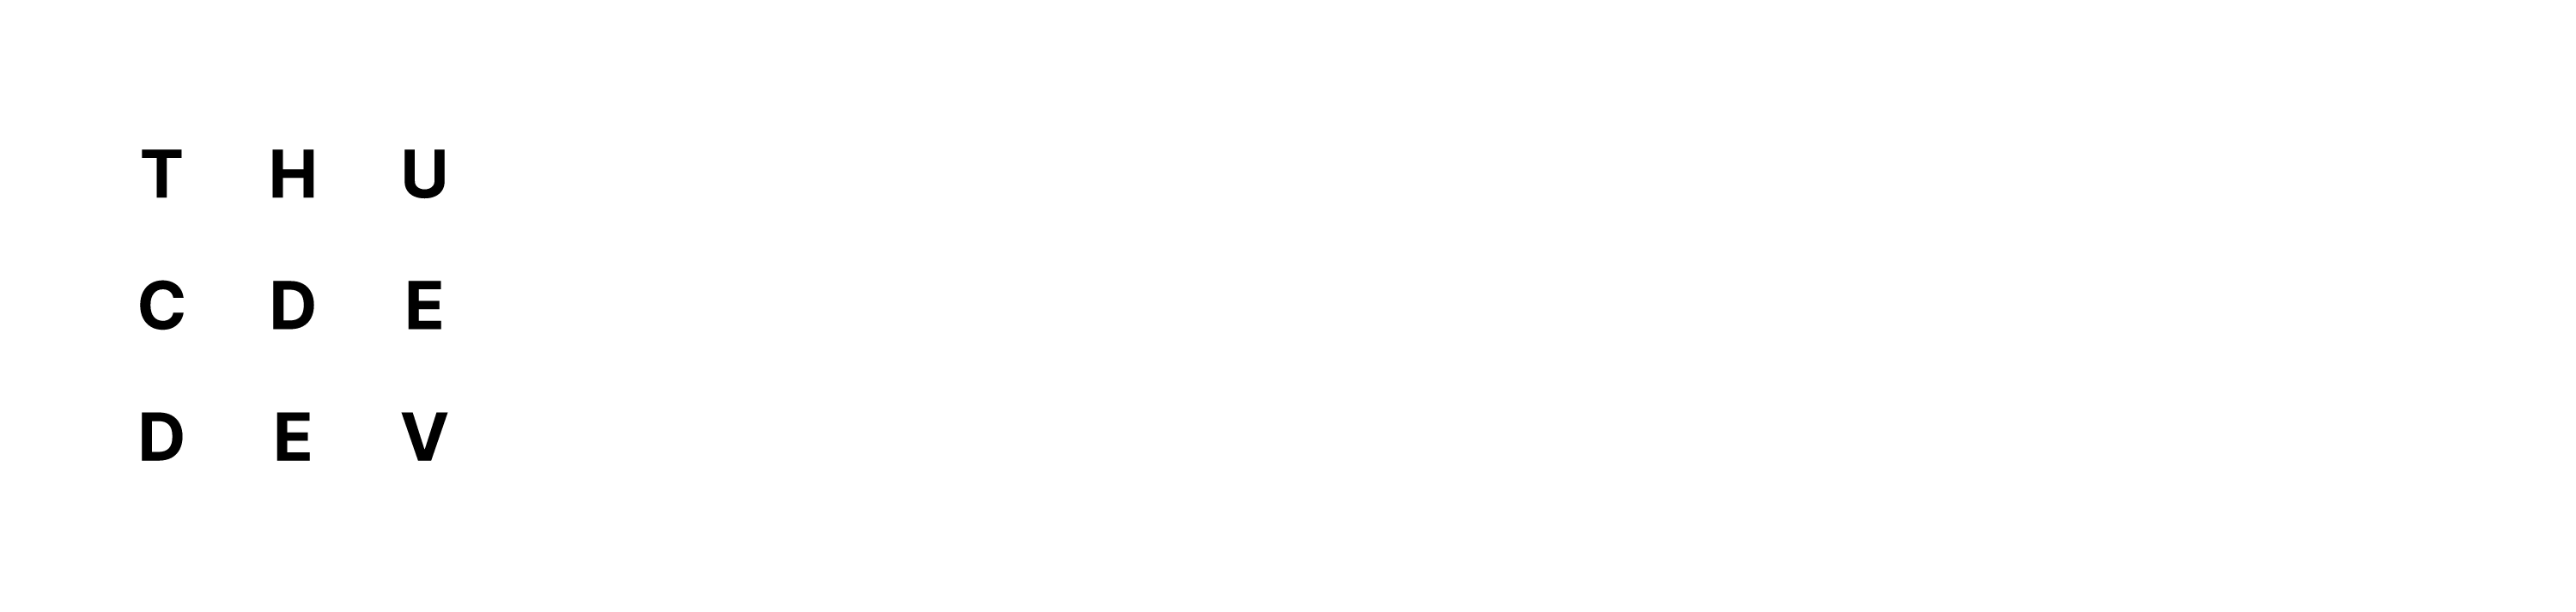 Thucde.dev logo